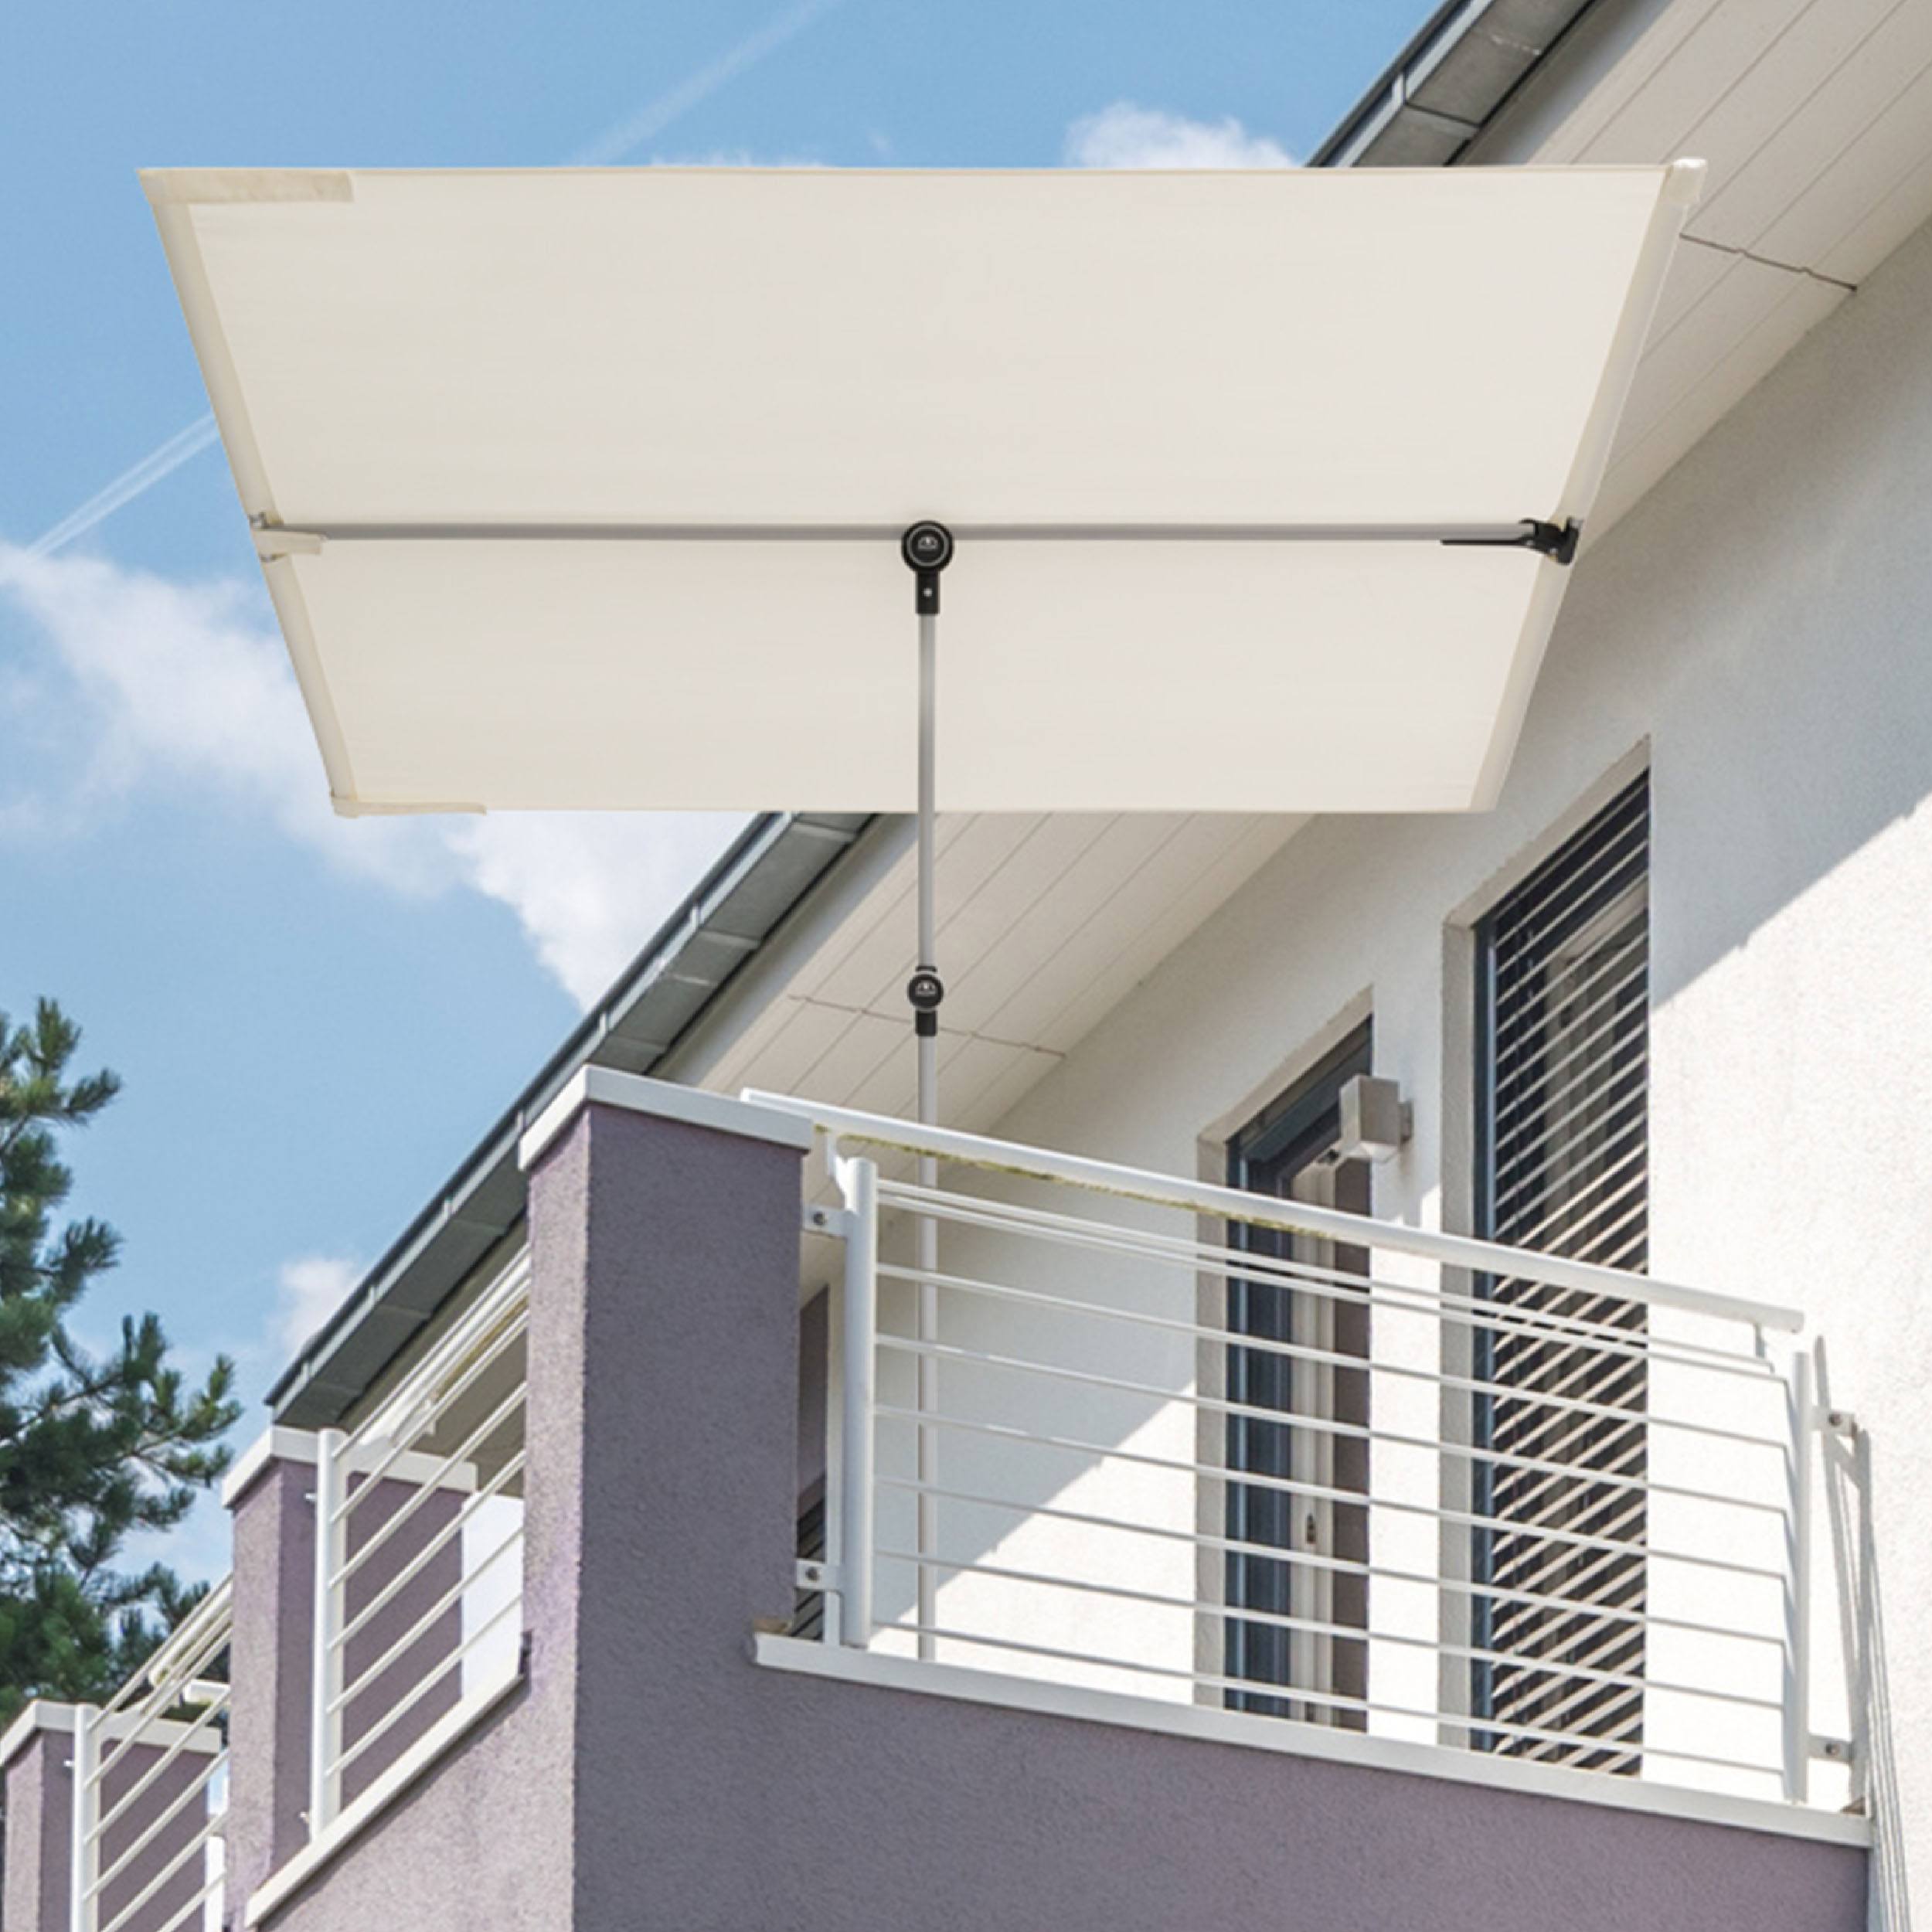 Active Balkonblende Sicht- und Sonnenschutz ohne Schirmständer